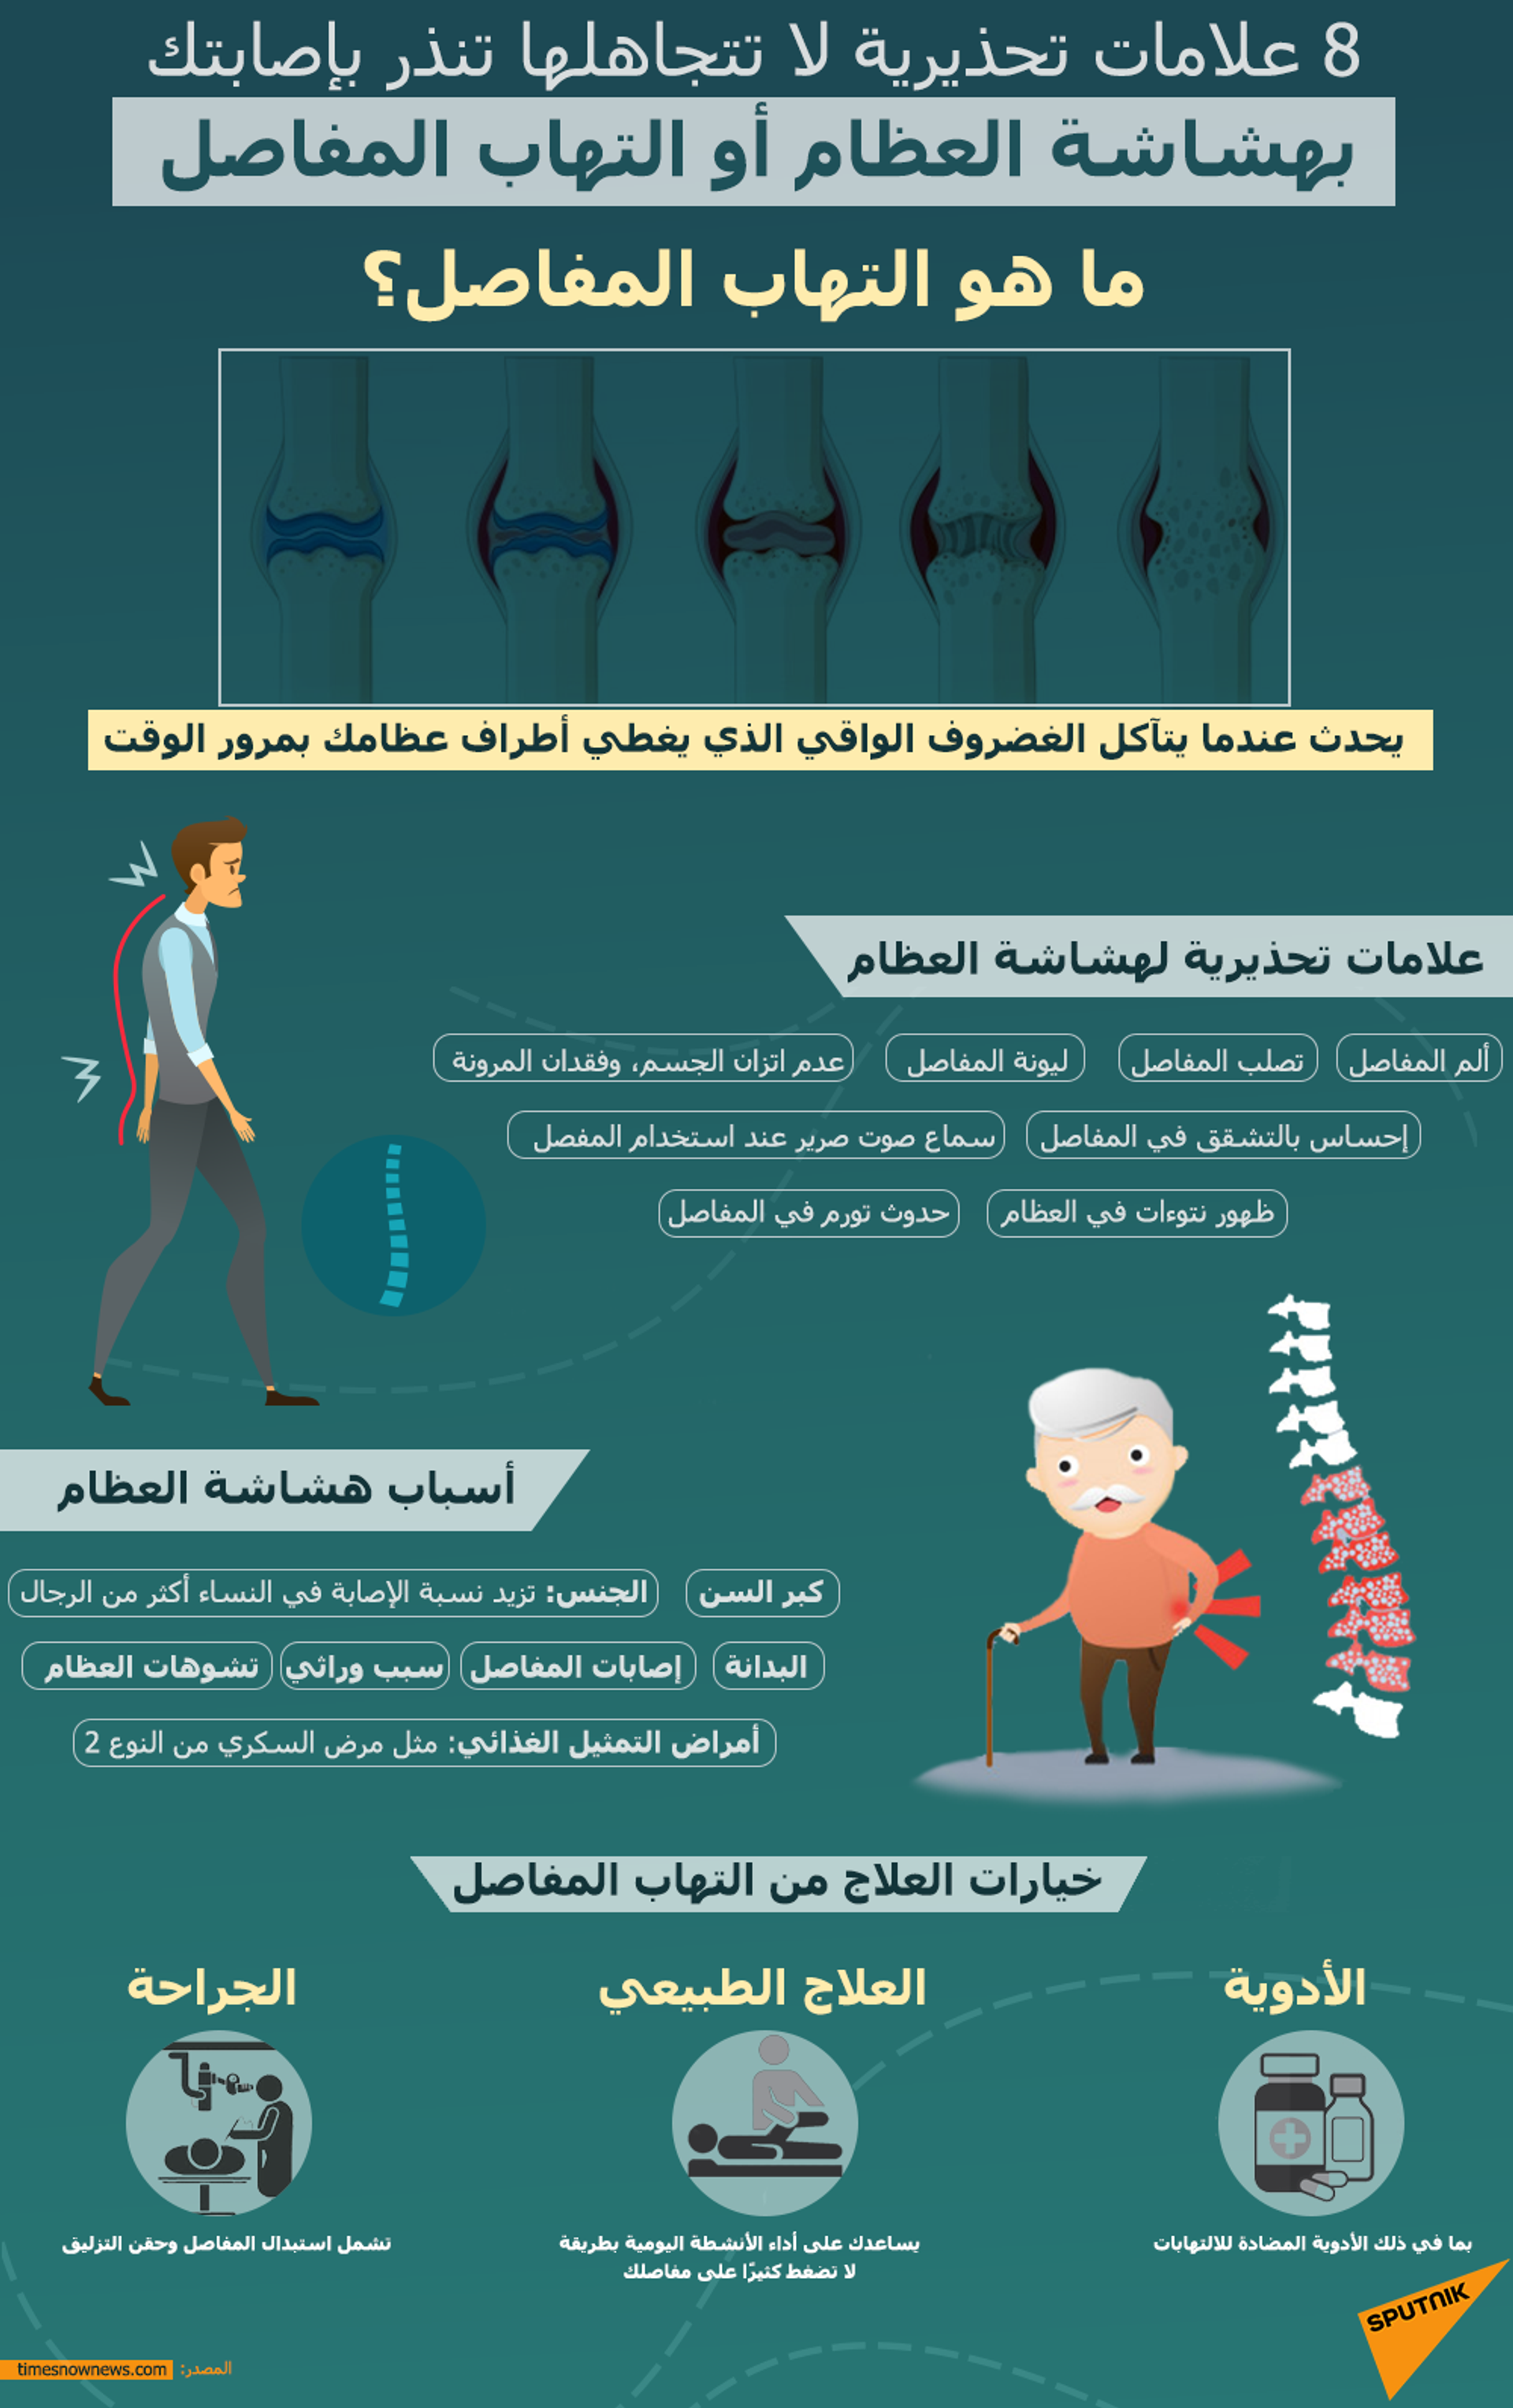 5 عادات شائعة تضعف العظام والمفاصل - سبوتنيك عربي, 1920, 23.07.2021